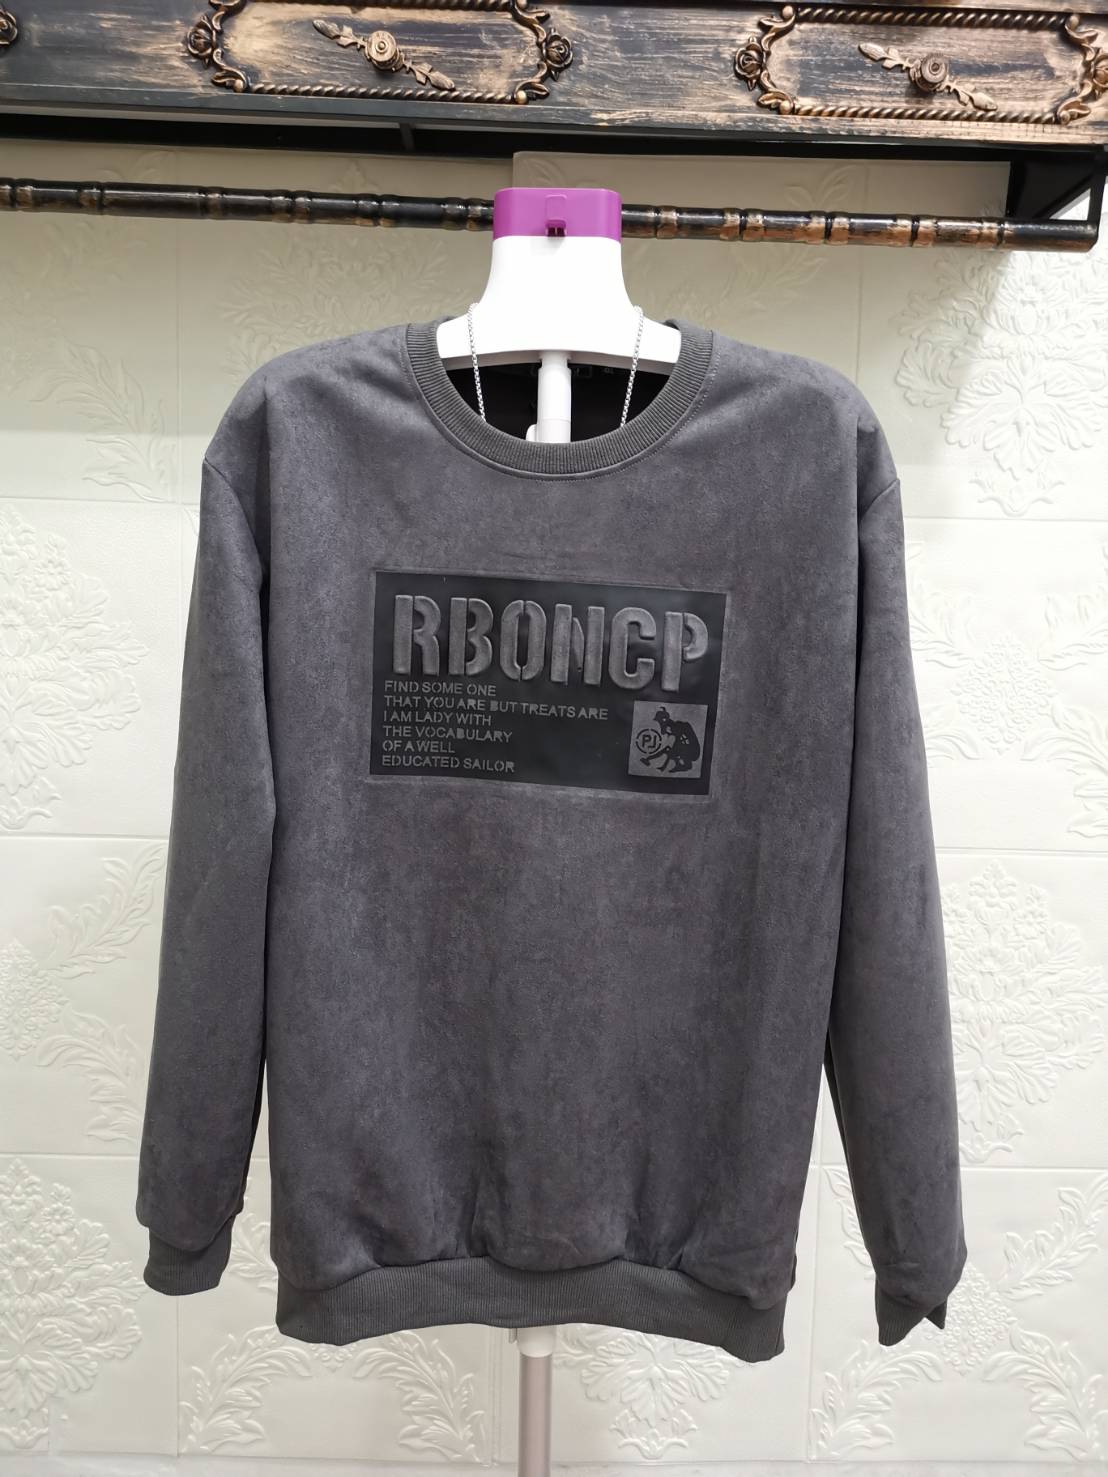 เสื้อกันหนาวแฟชั่น RBONCP ผ้าสักหลาดชนิดหนานุ่ม งานปักเนี๊ยบแน่น ซักไม่หลุด จ่ายเงินปลายทางได้